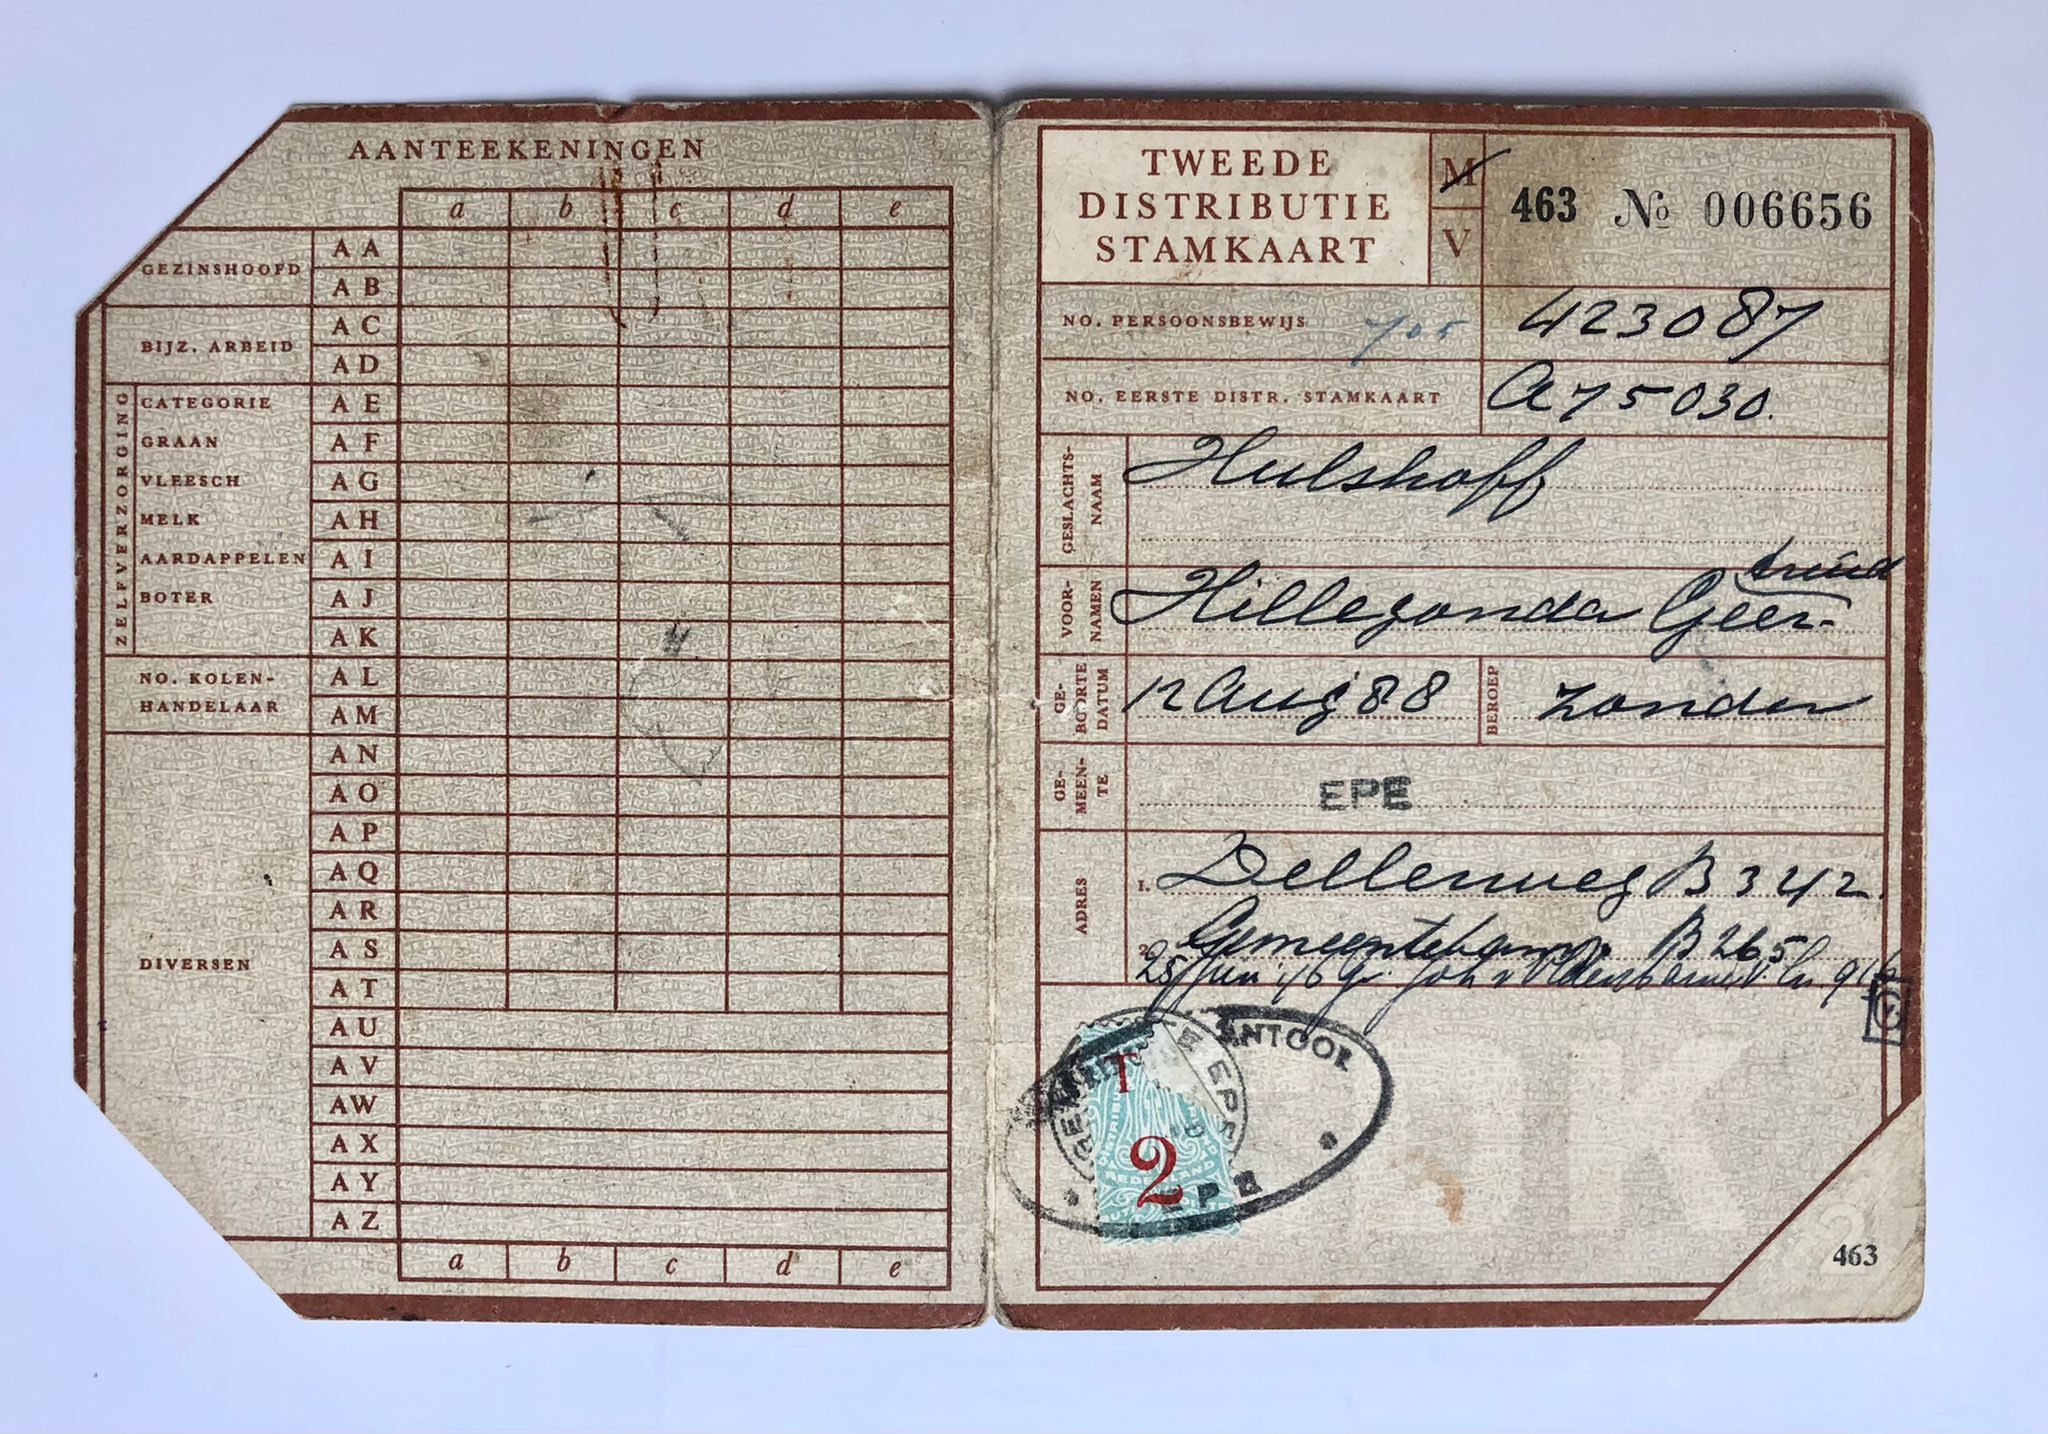 [WO II, bonnen tweede wereldoorlog] Distributiestamkaart, ca. 1945, t.n.v. Hillegonda Geertruida Hulshoff, geb. 12-8-1888, wonende te Epe, 1 stuk.